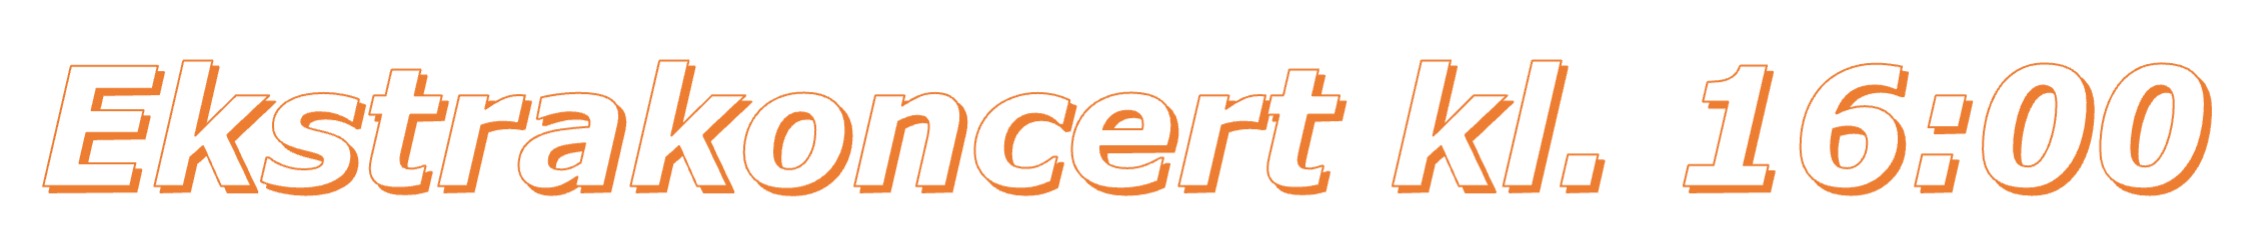 Ekstrakoncert logo